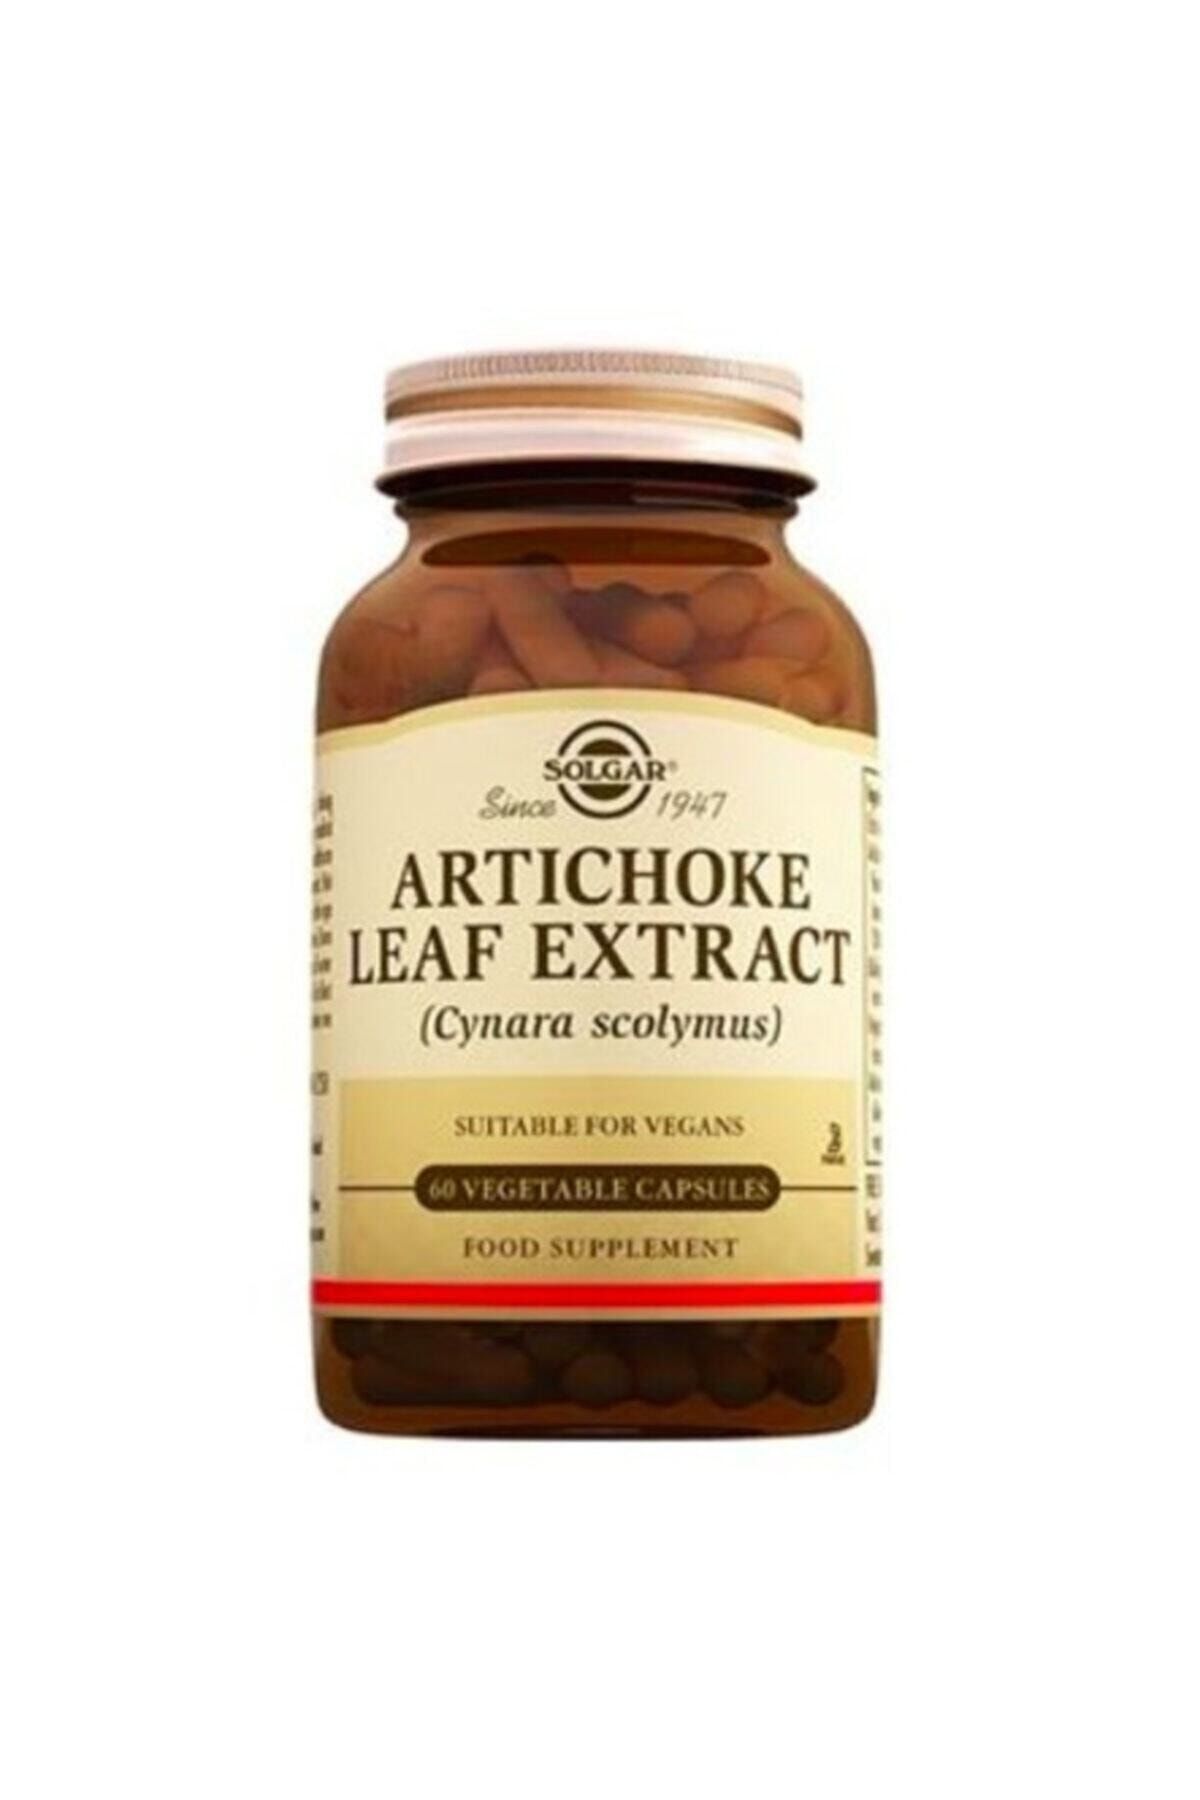 Solgar Artichoke Leaf Extract 60 Softgel E-vital